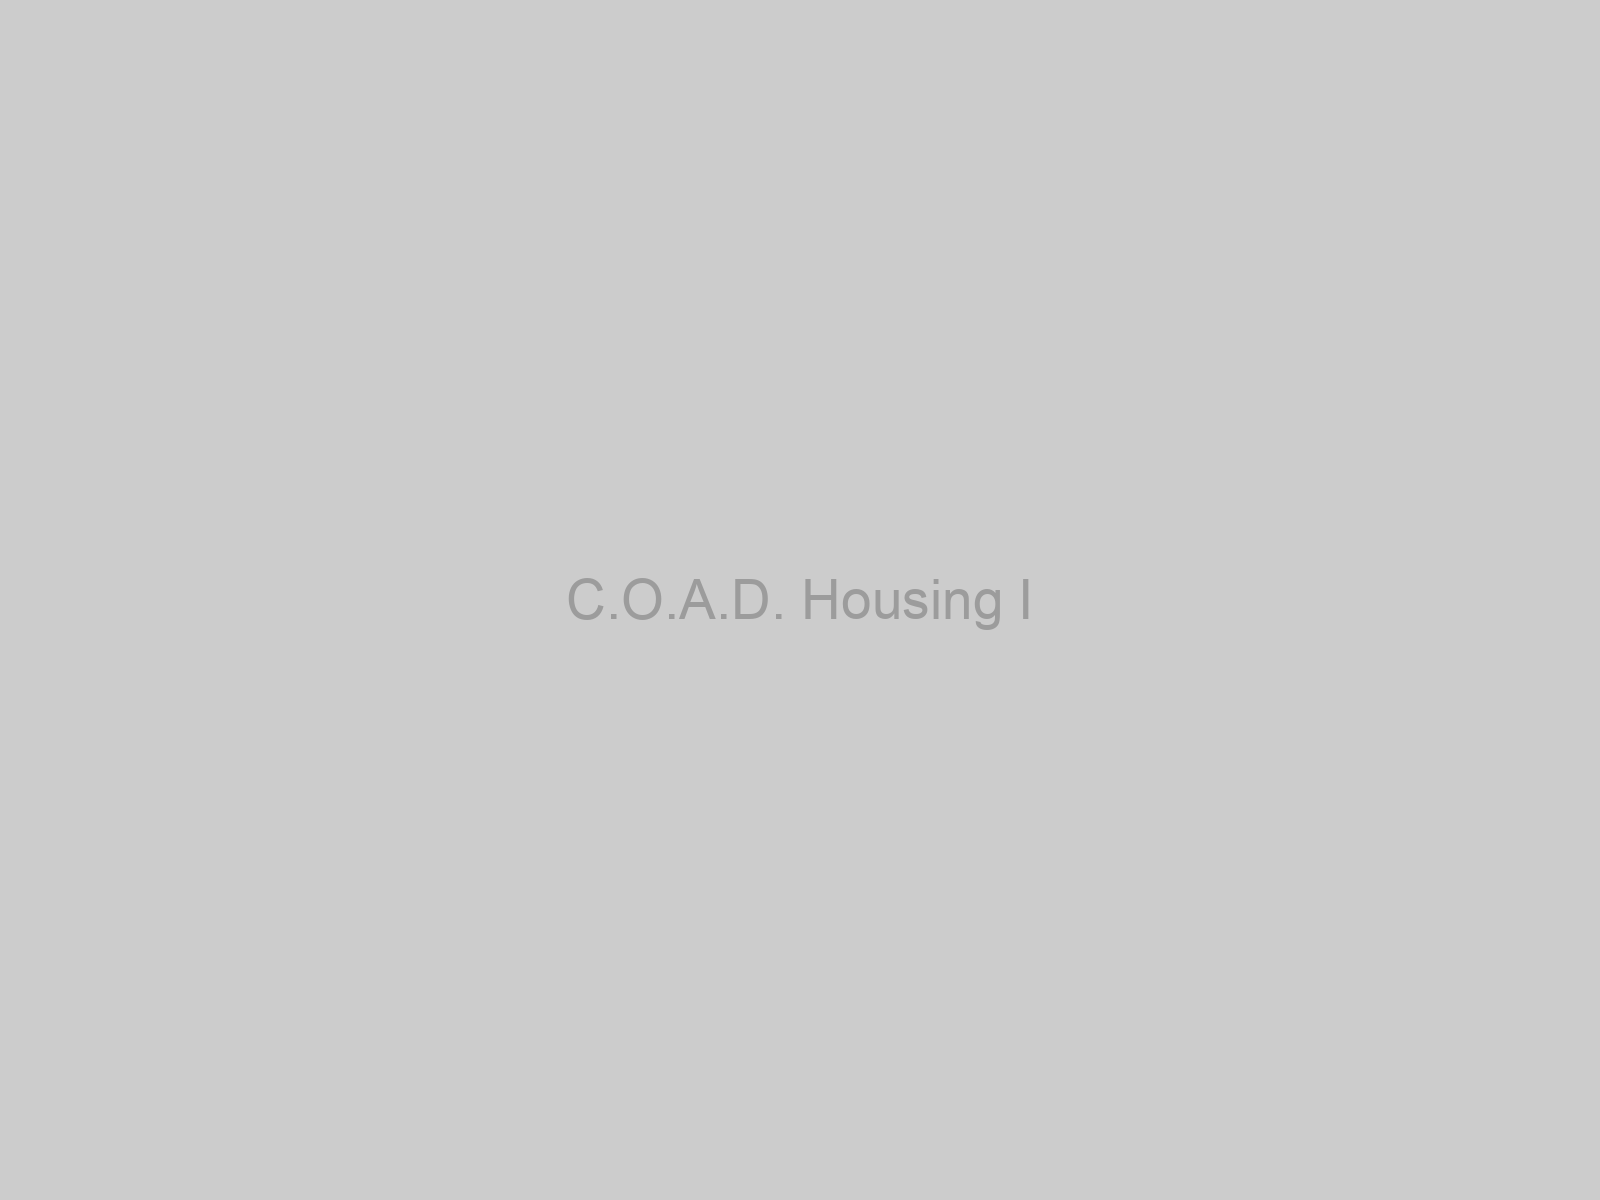 C.O.A.D. Housing I